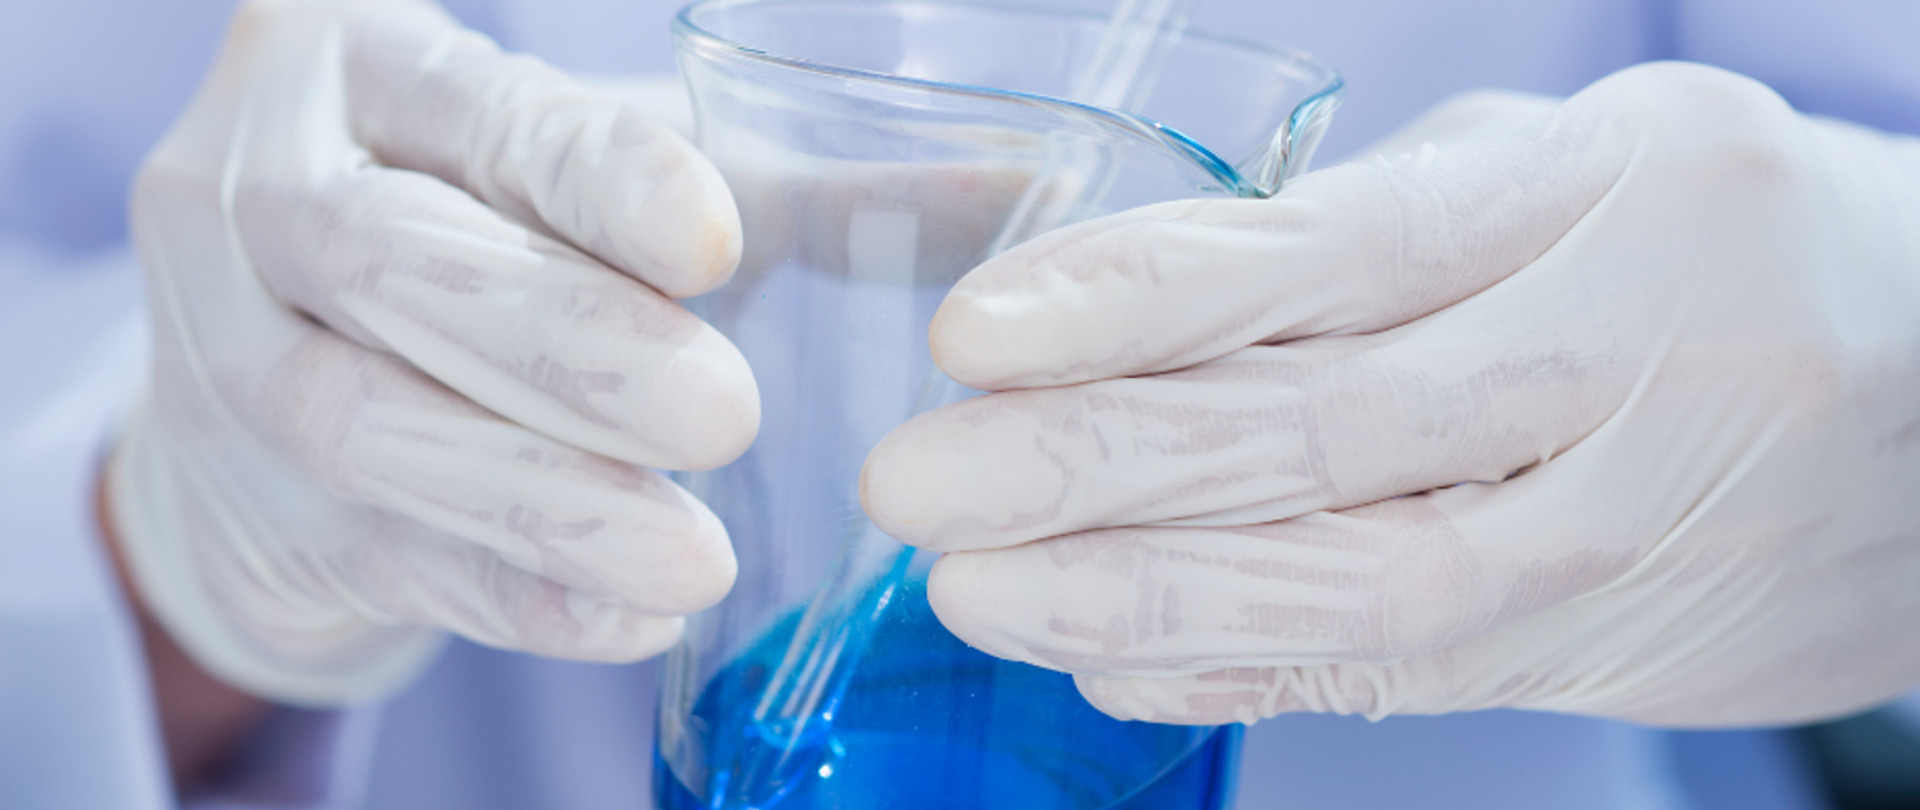 Osoba w rękawiczkach trzyma zlewkę laboratoryjną wypełnioną niebieską substancją